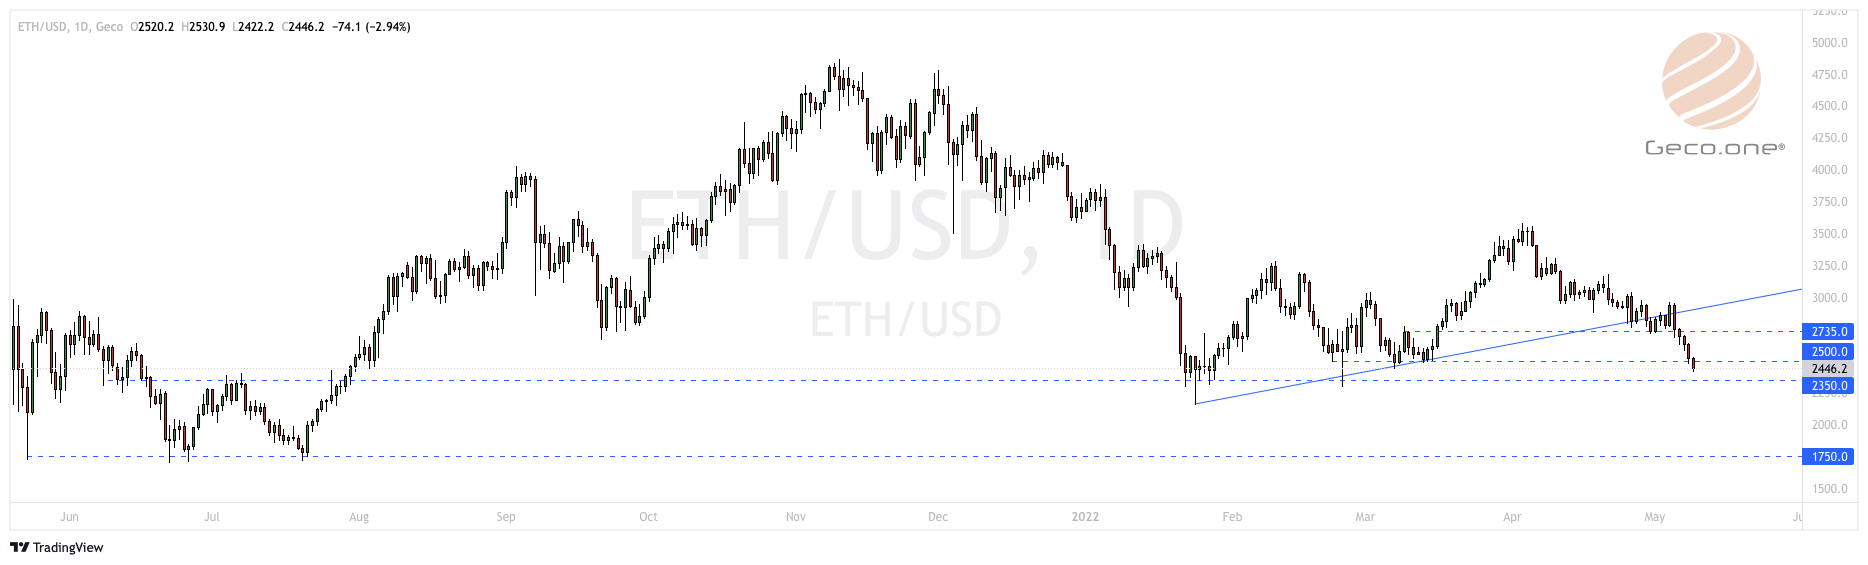 ETH Price | ETH/USD